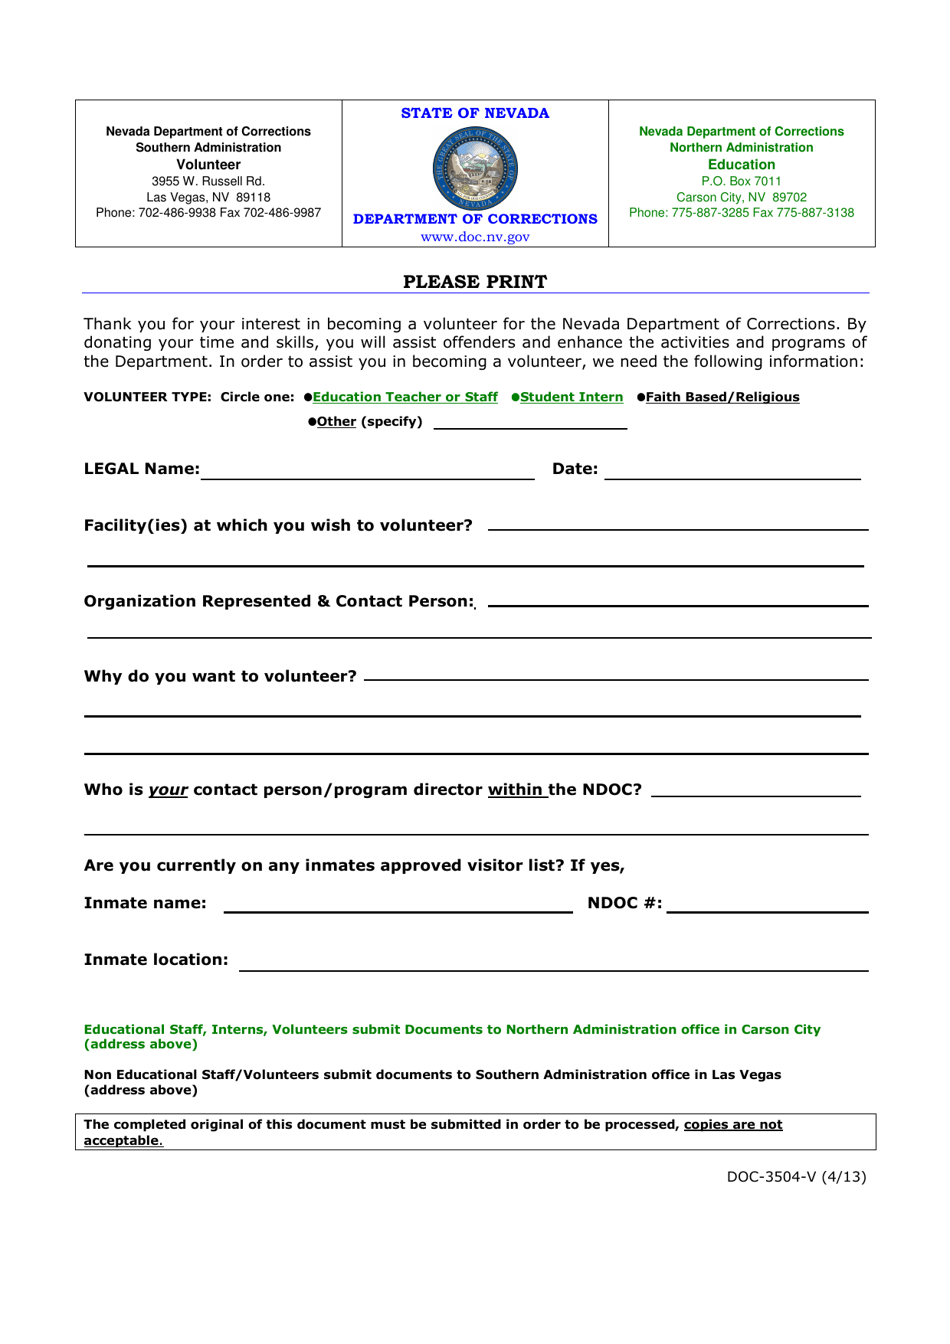 Form DOC-3504-V Volunteer Application Form - Nevada, Page 1